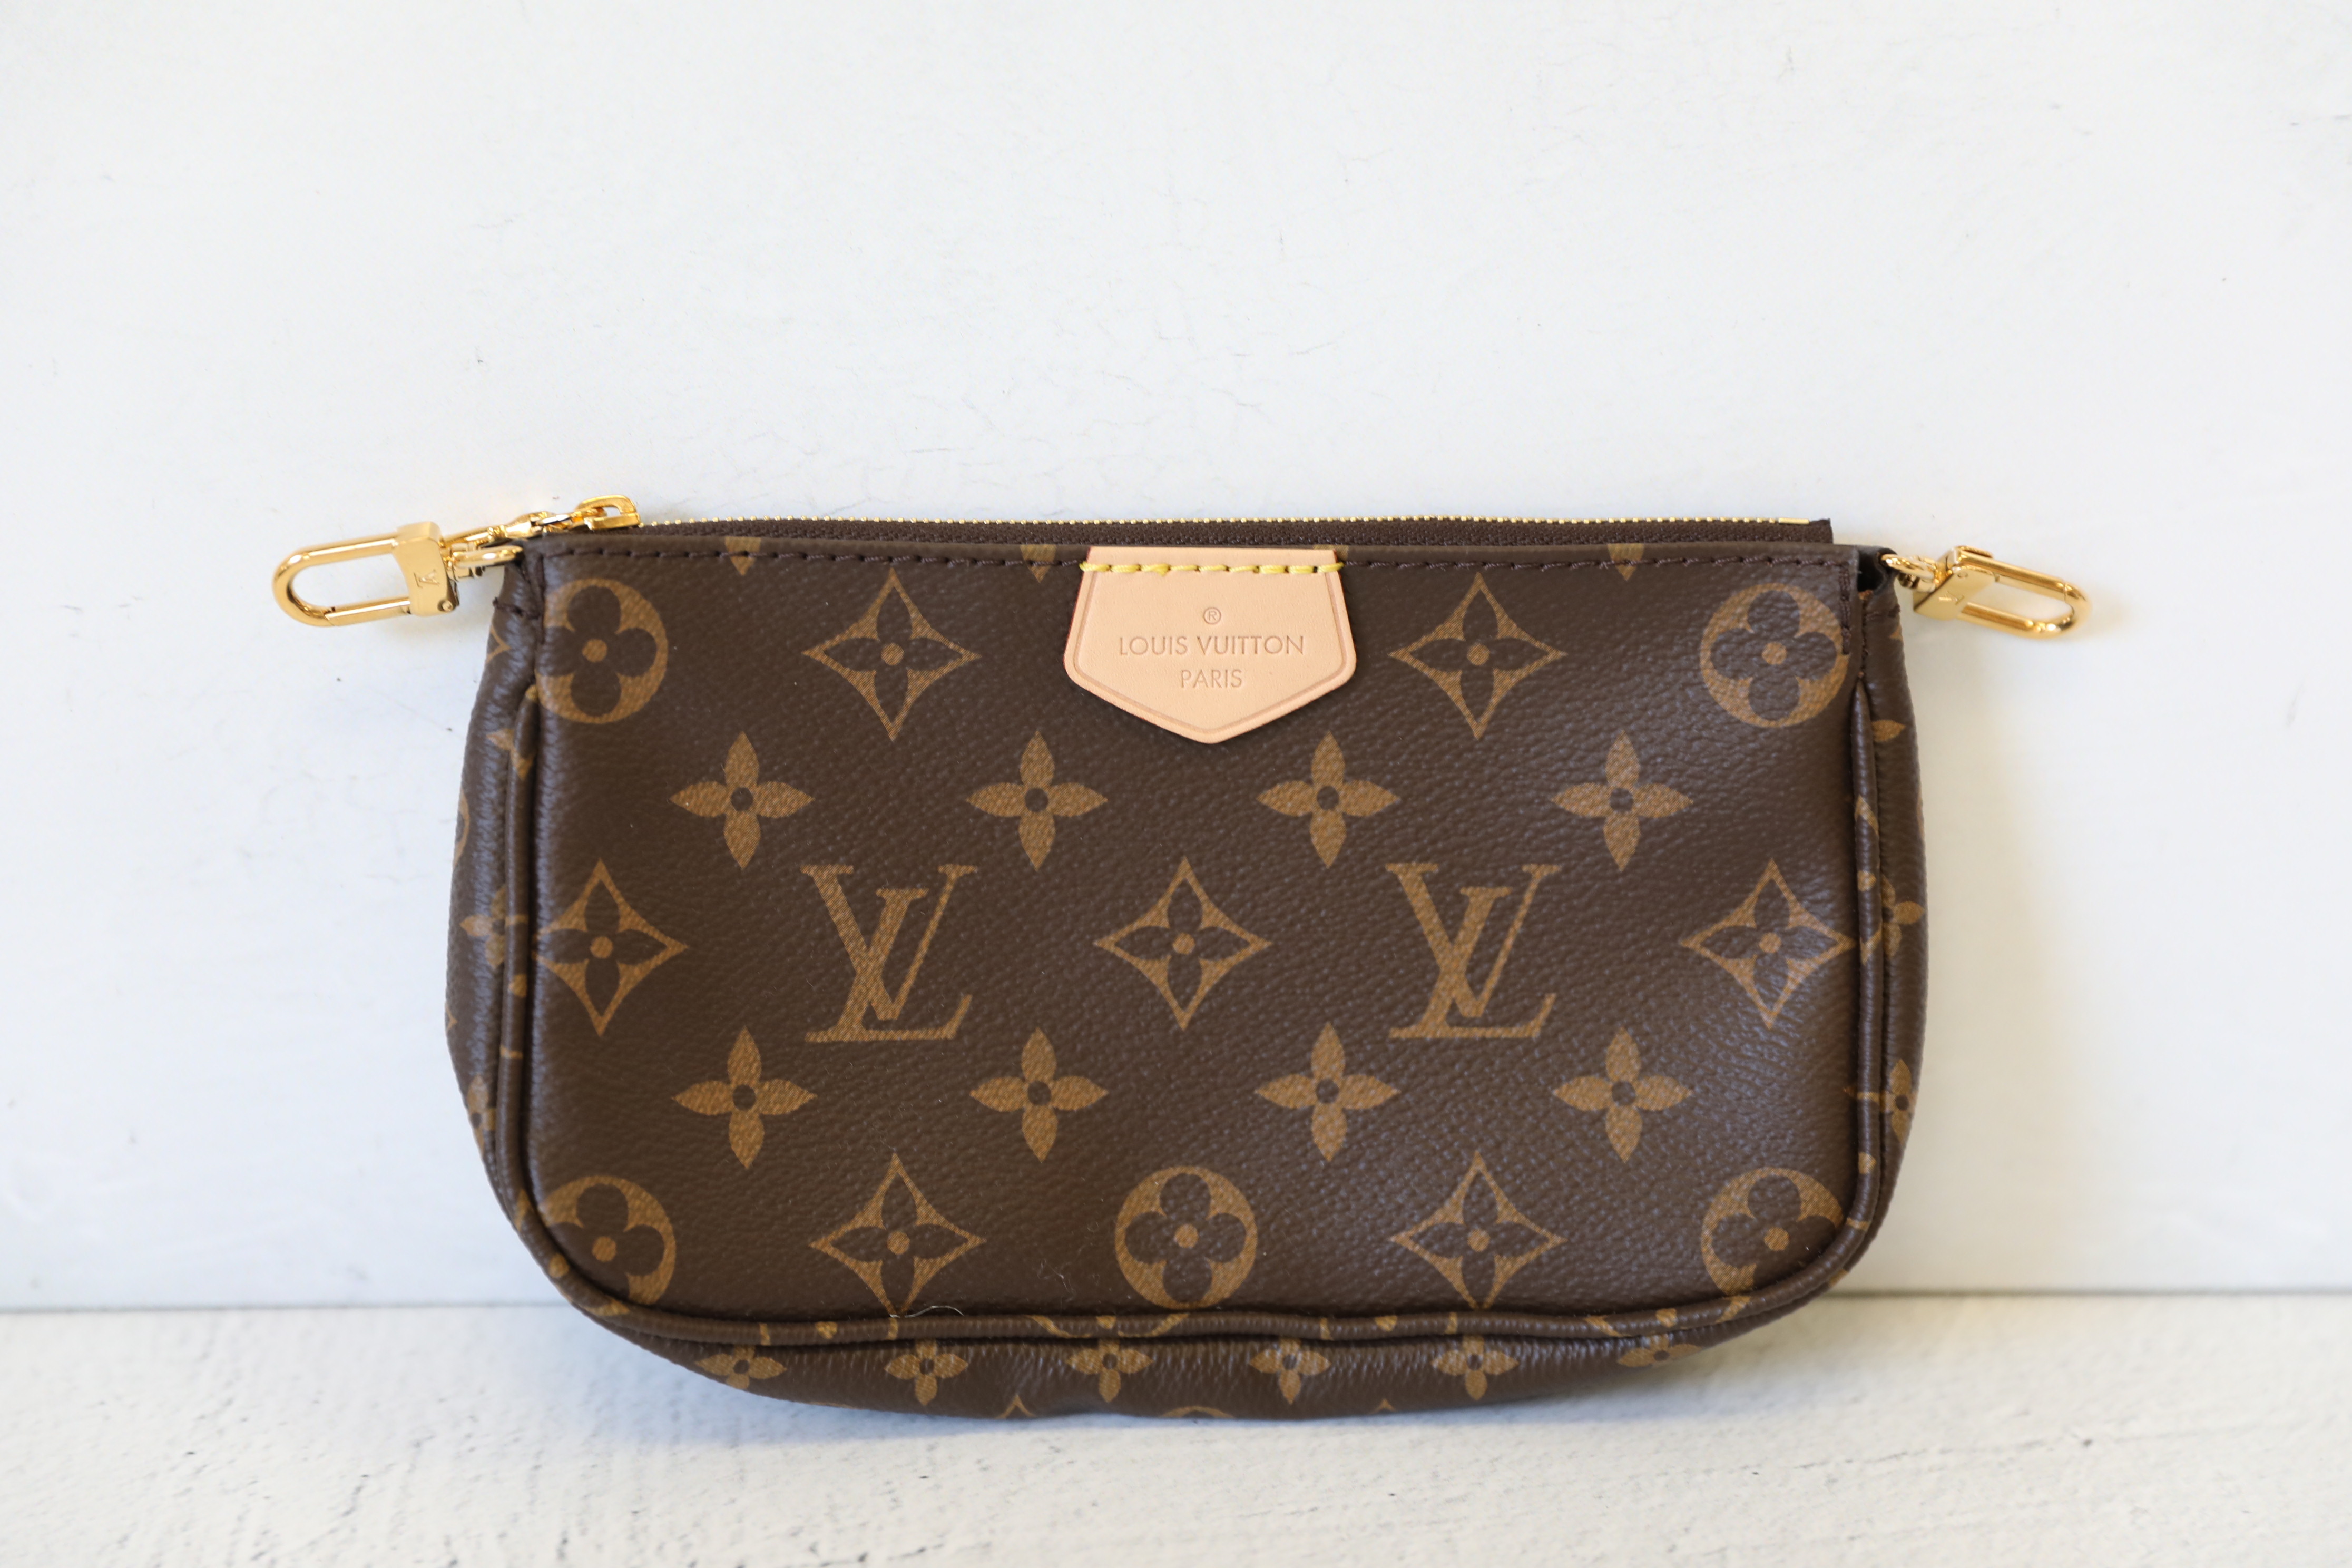 Túi xách Louis Vuitton Size to rep 1:1 chính hãng màu ghi họa tiết